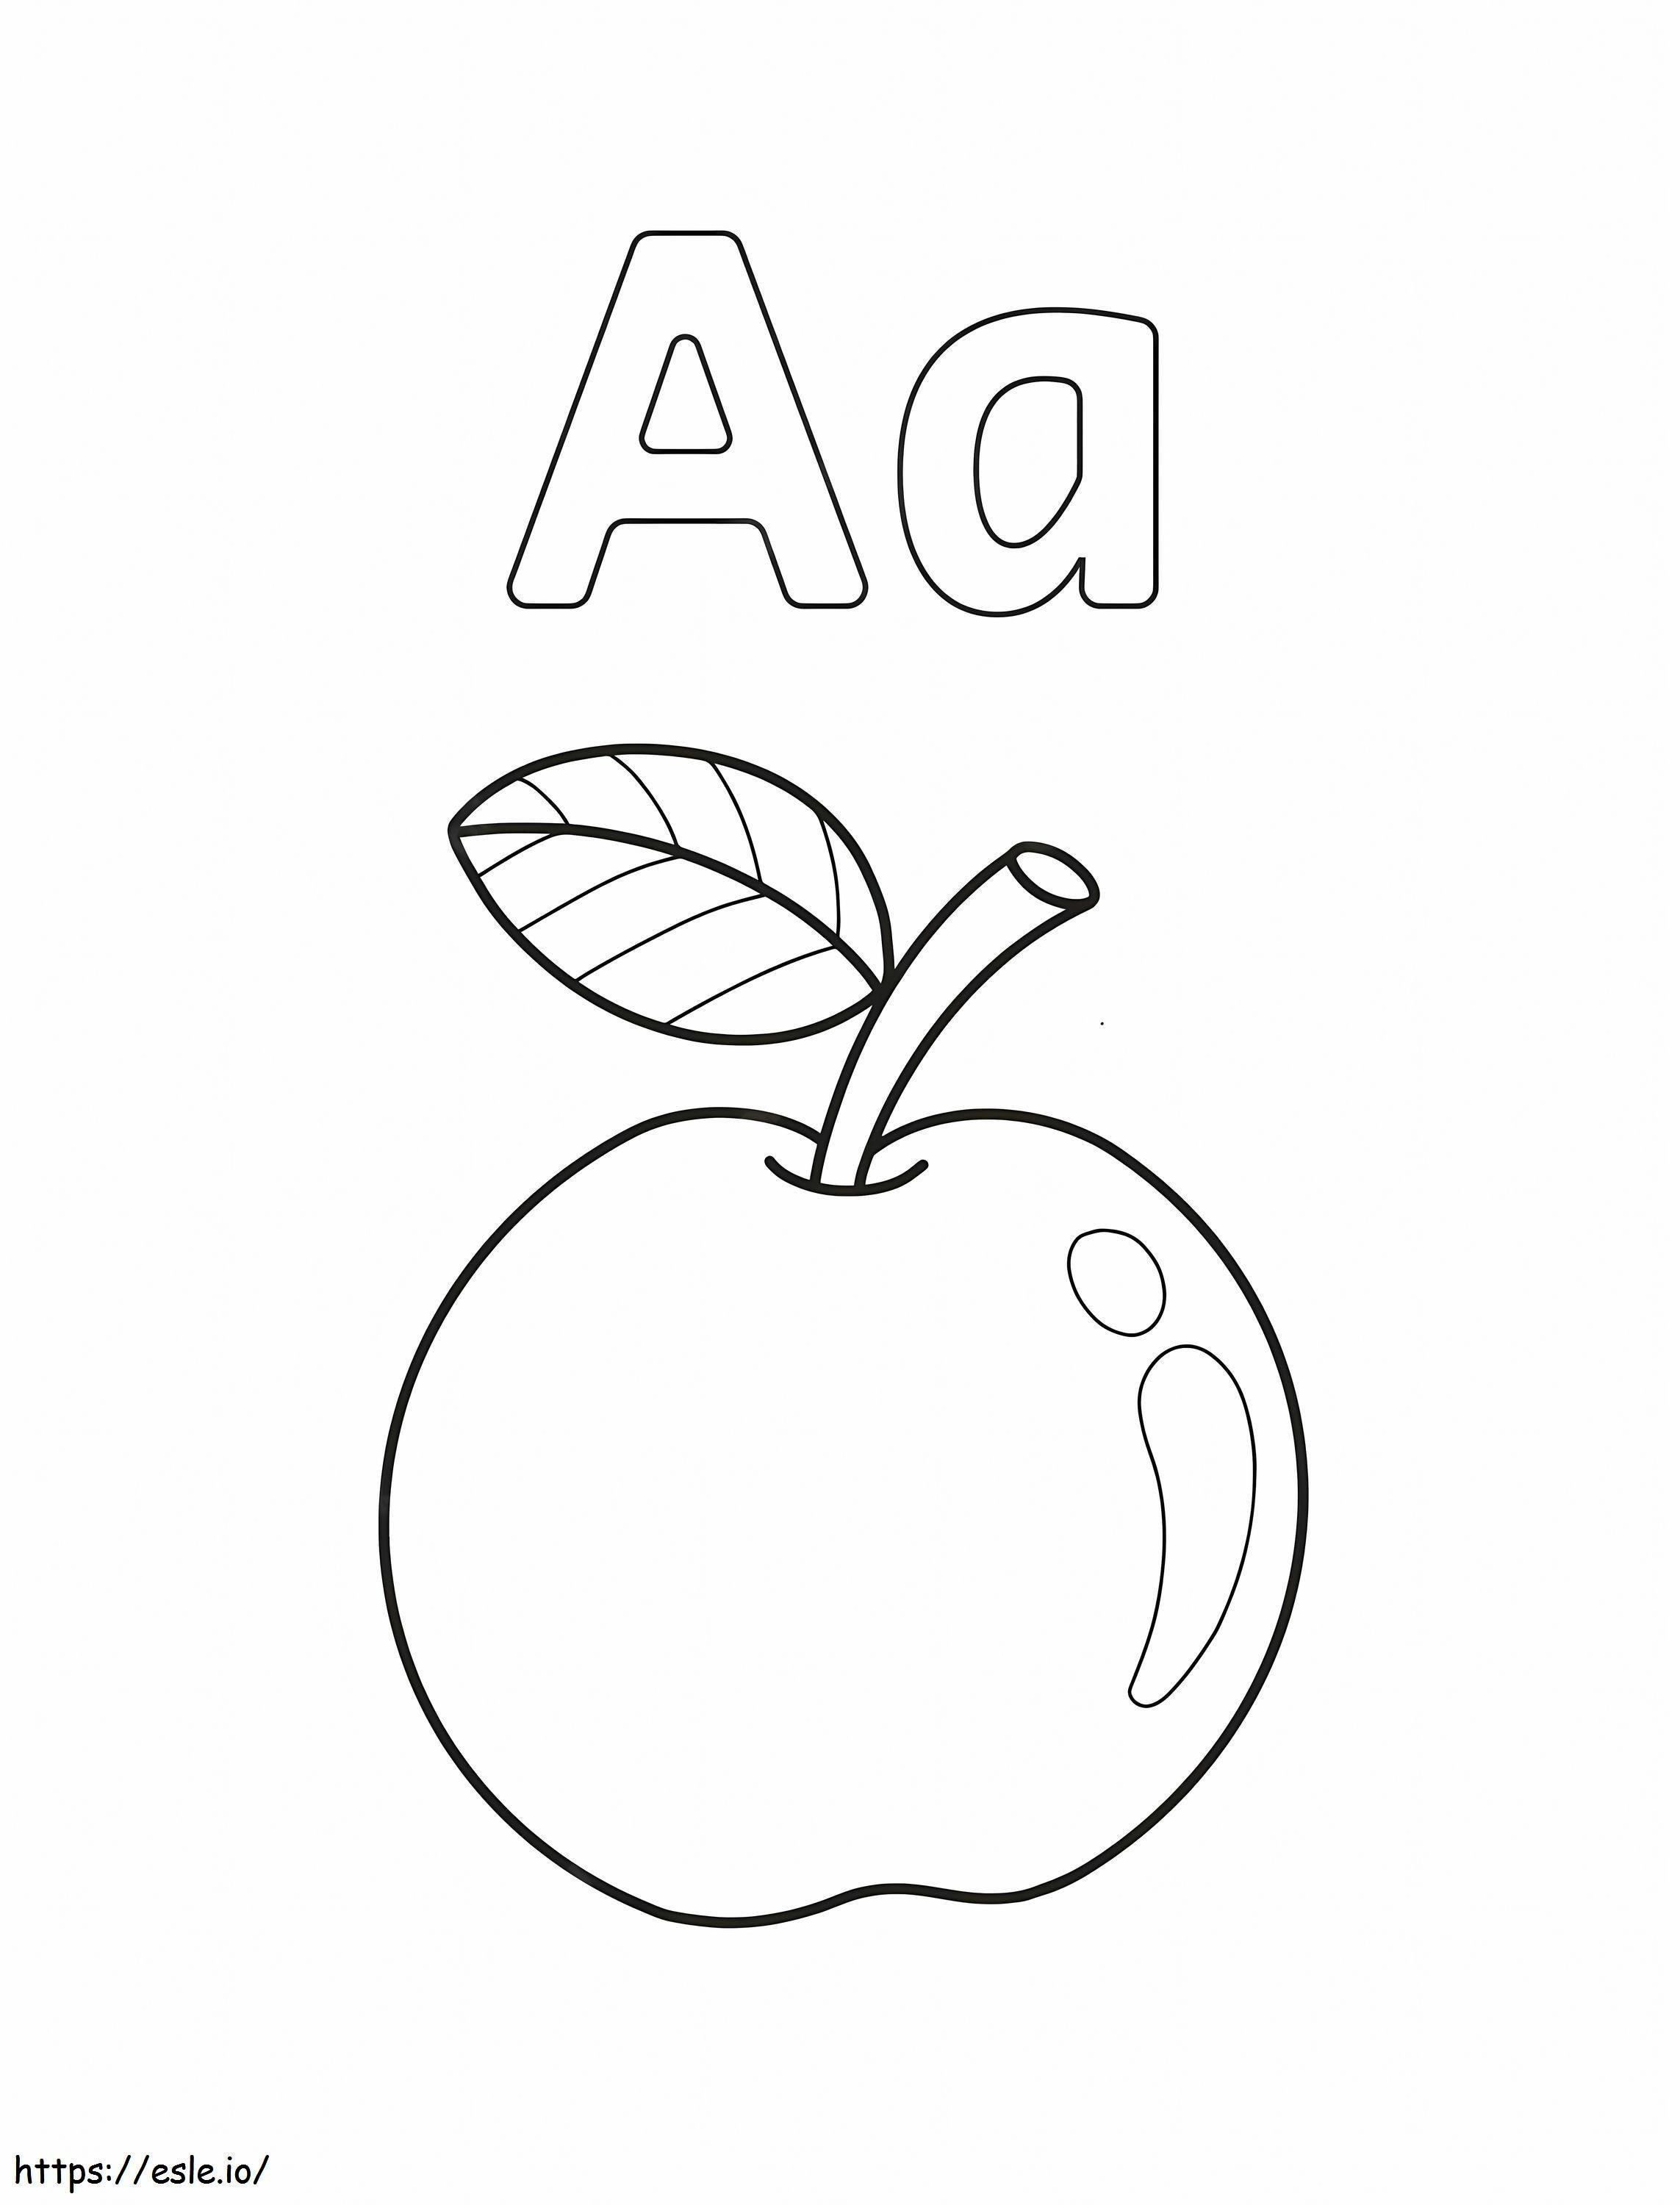 Buchstabe A und Apfel ausmalbilder